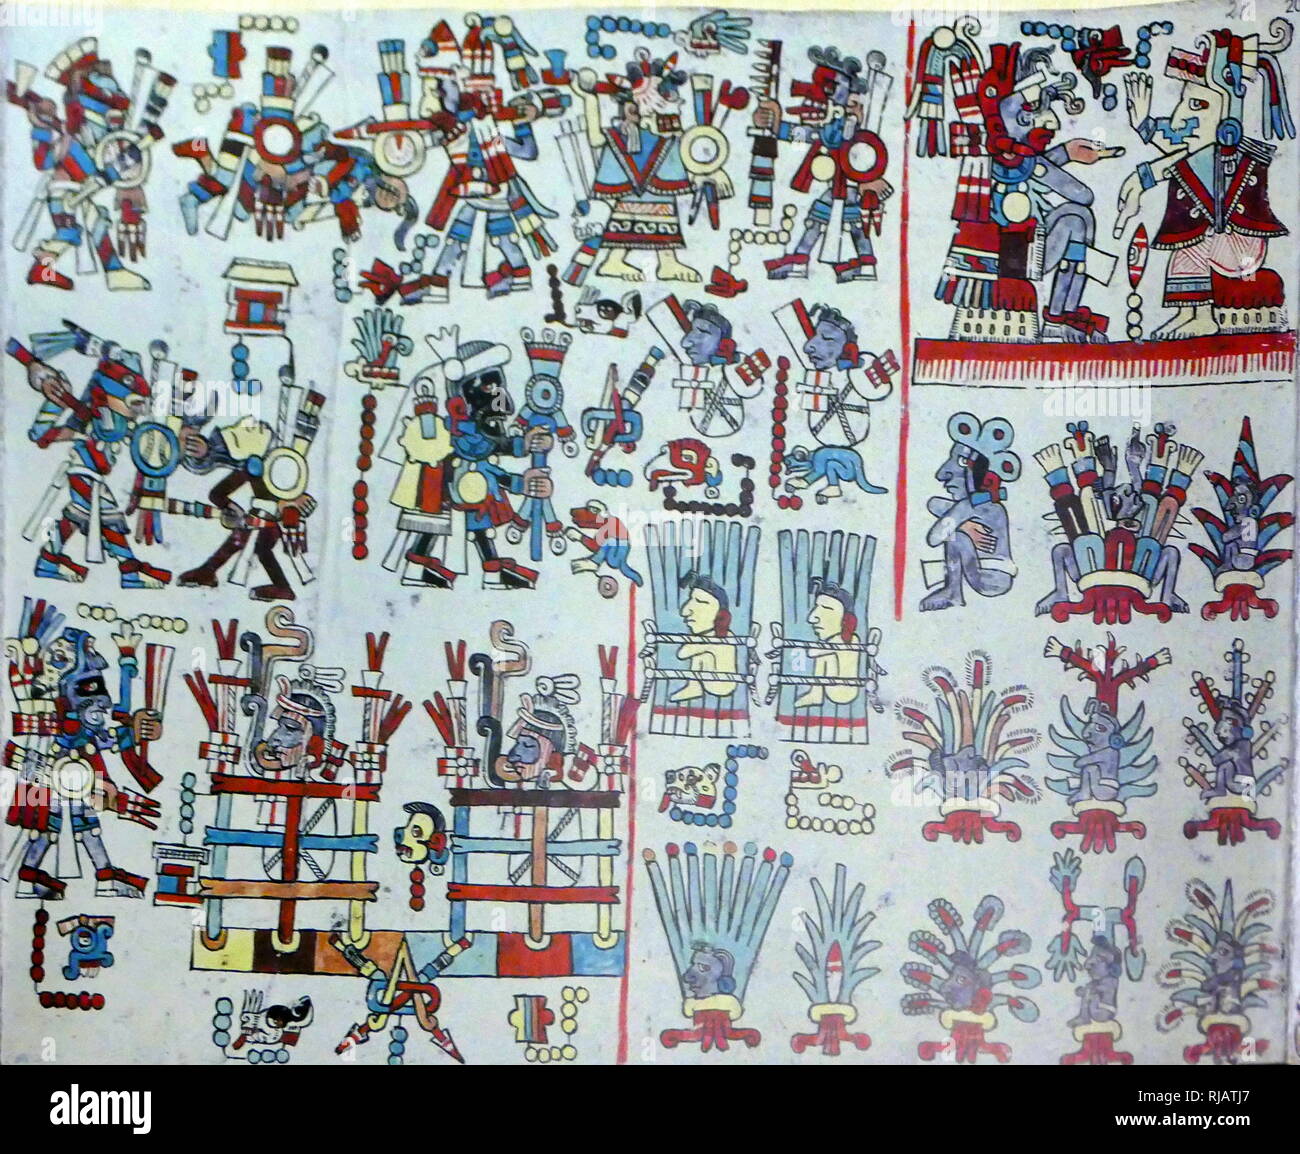 Der Codex Zouche-Nuttall oder Codex Tonindeye ist ein Akkordeon - gefaltet Präkolumbianischen Dokument der Mixtekischen pictography, jetzt in die Sammlungen des Britischen Museums. Es ist eines von ca. 16 Handschriften aus Mexiko, die ganz Präkolumbischen Ursprungs. Ca. 14. Stockfoto